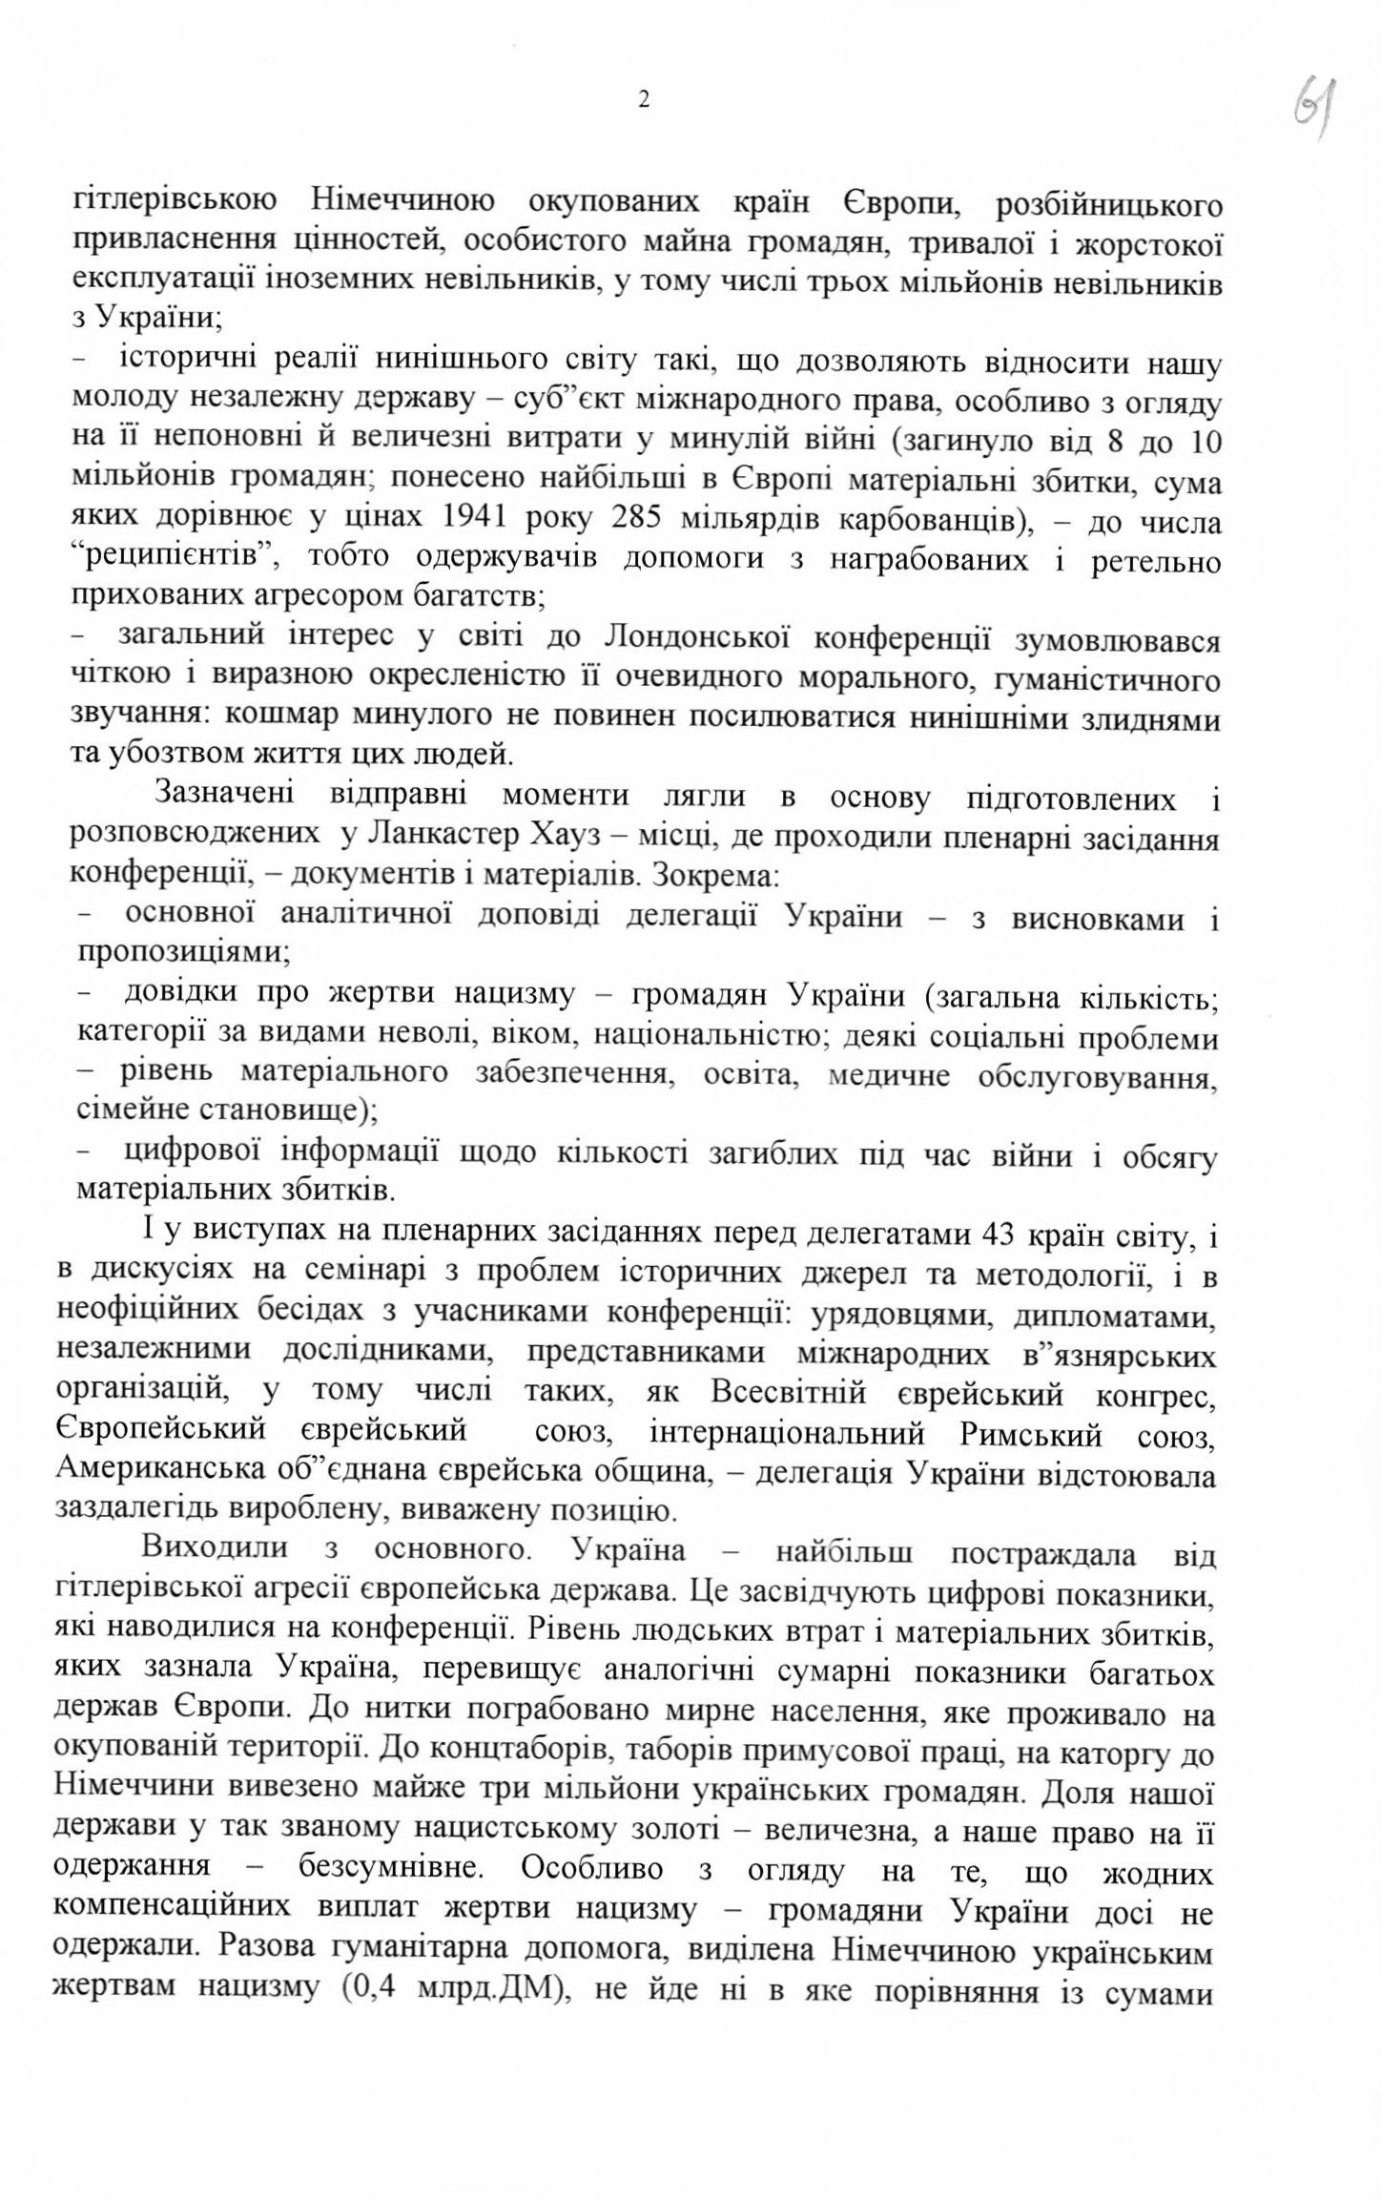 Звіт про участь делегації України у роботі Міжнародної конференції у м. Лондоні з “нацистського золота”. 18 грудня 1997 р.